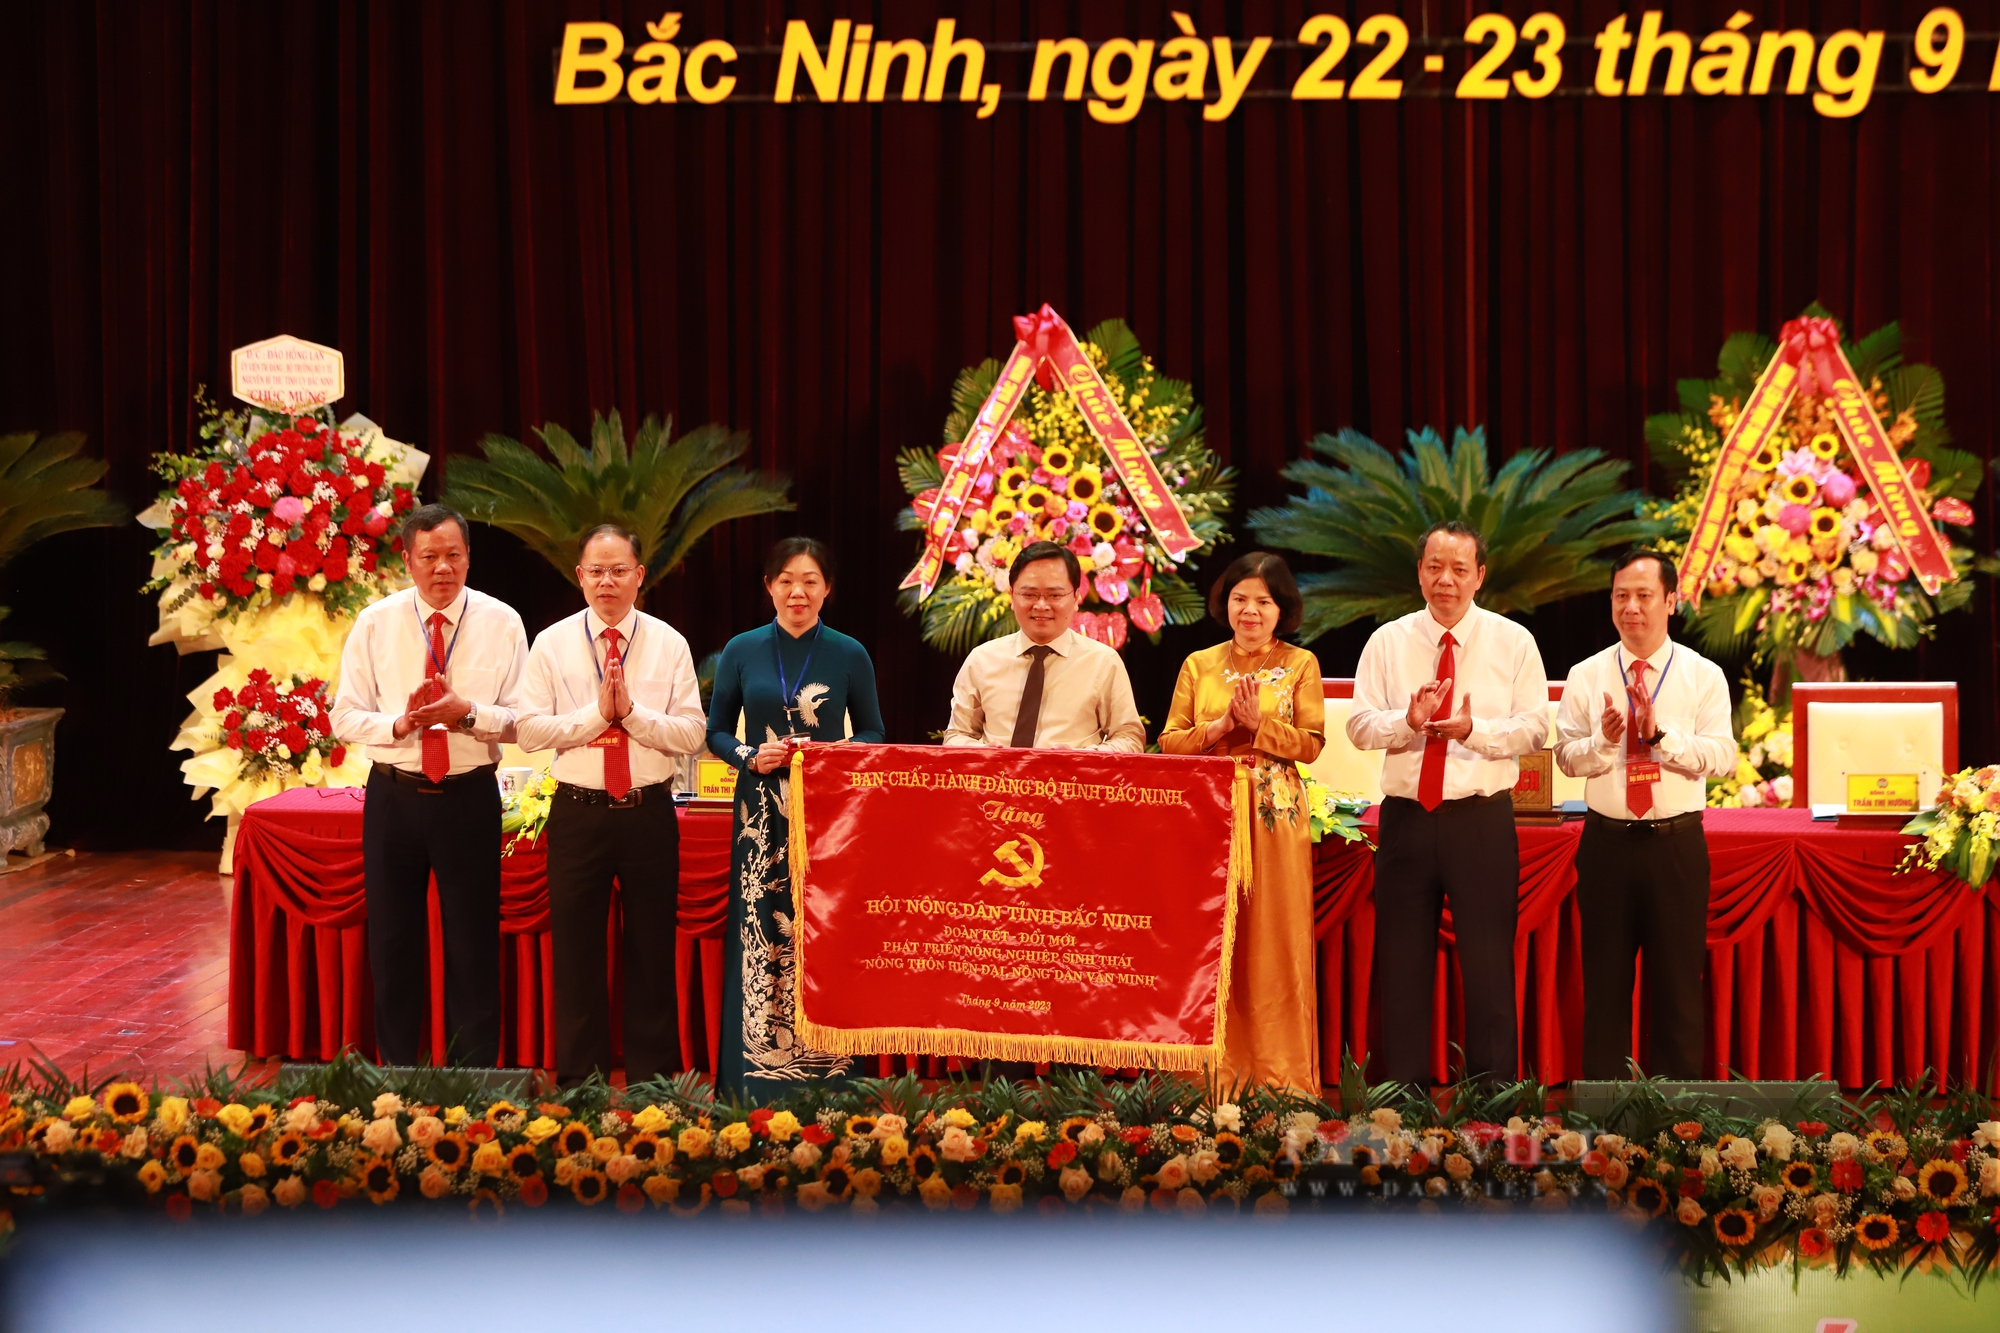 Phó chủ tịch Hội NDVN Nguyễn Xuân Định gợi mở 5 vấn đề tại Đại hội đại biểu Hội Nông dân tỉnh Bắc Ninh - Ảnh 8.